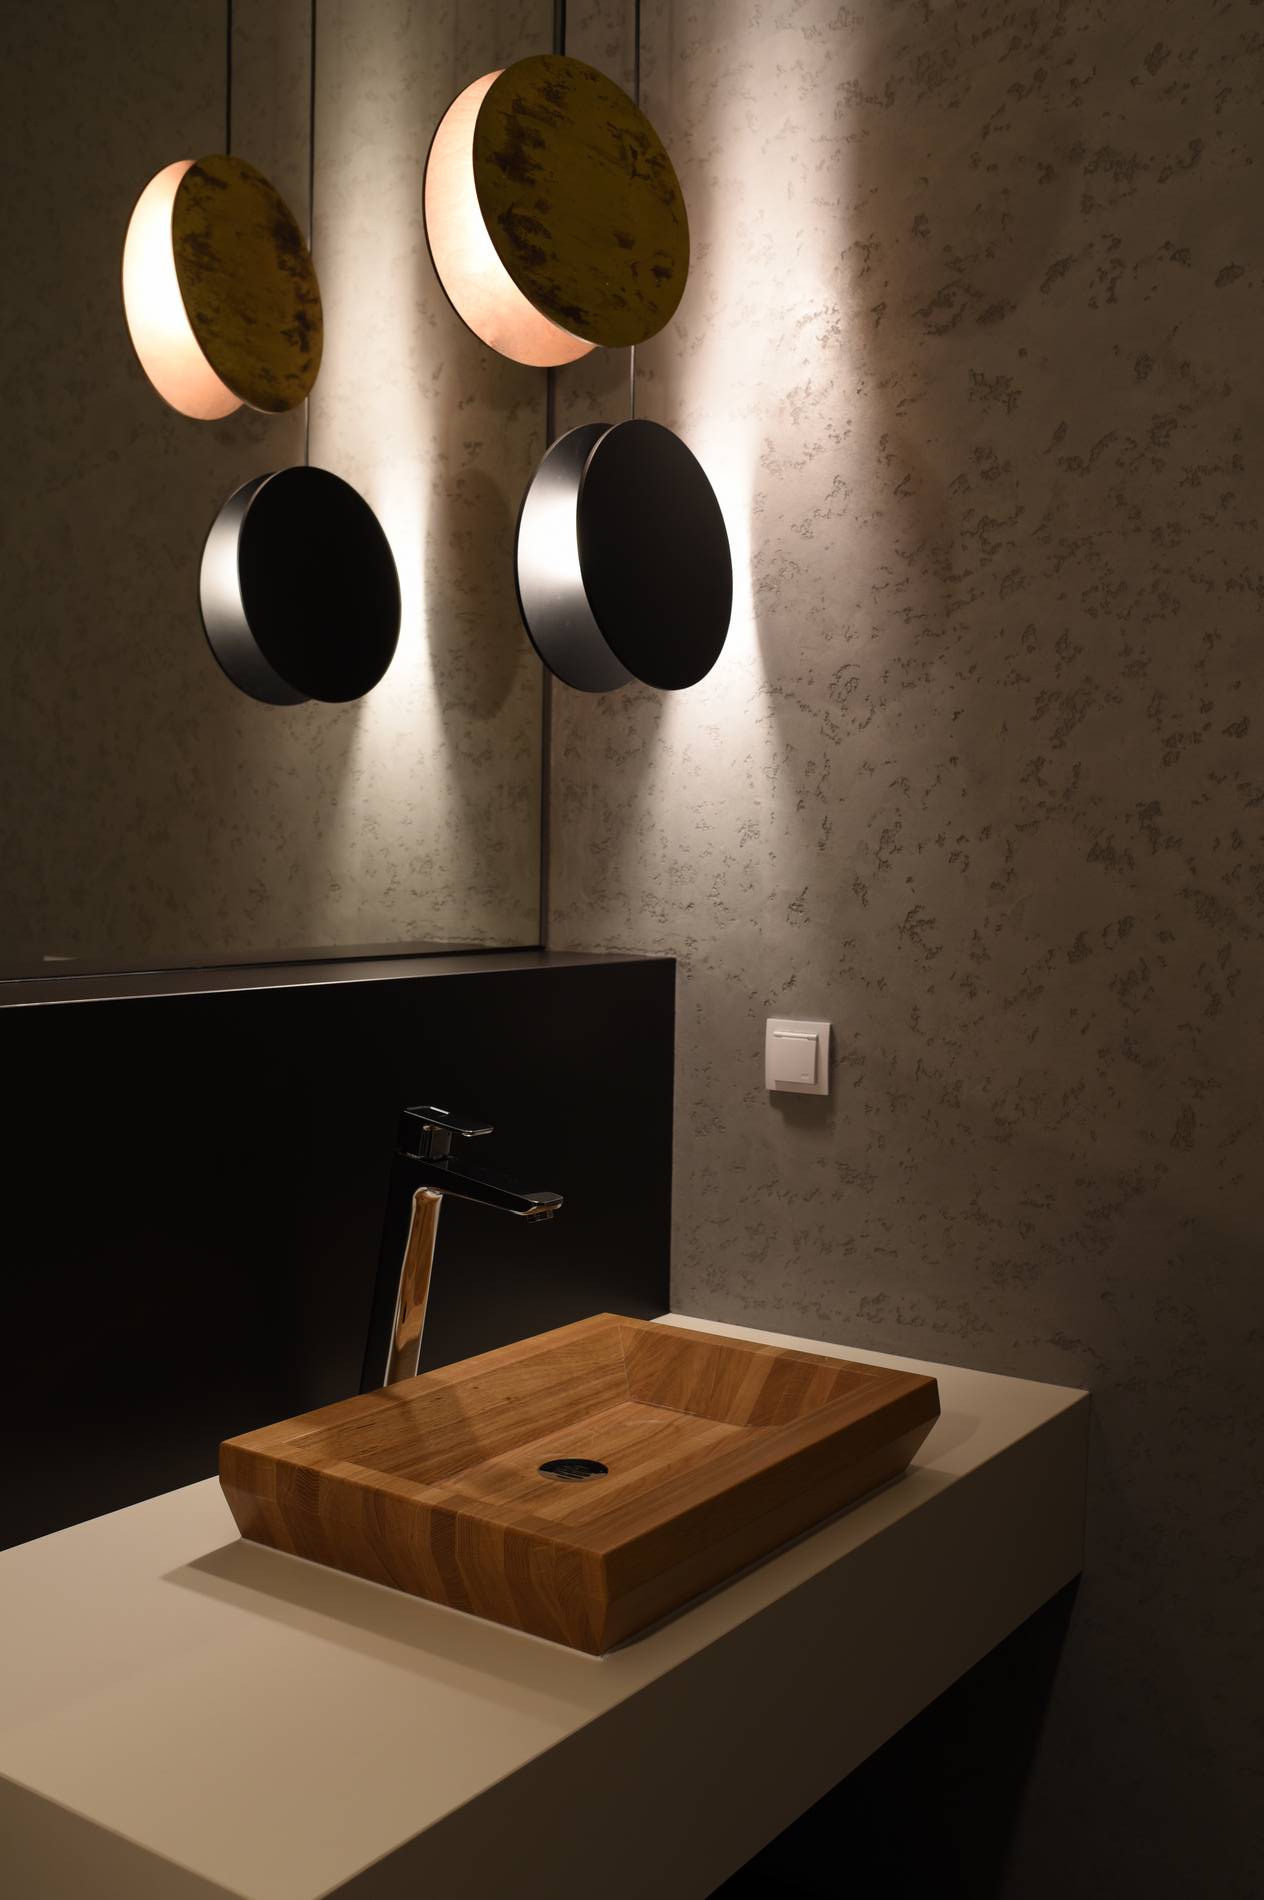 Handgefertigtes Massivholz Waschbecken - Kunstvolles Design für eine warme und einladende Badezimmeratmosphäre.